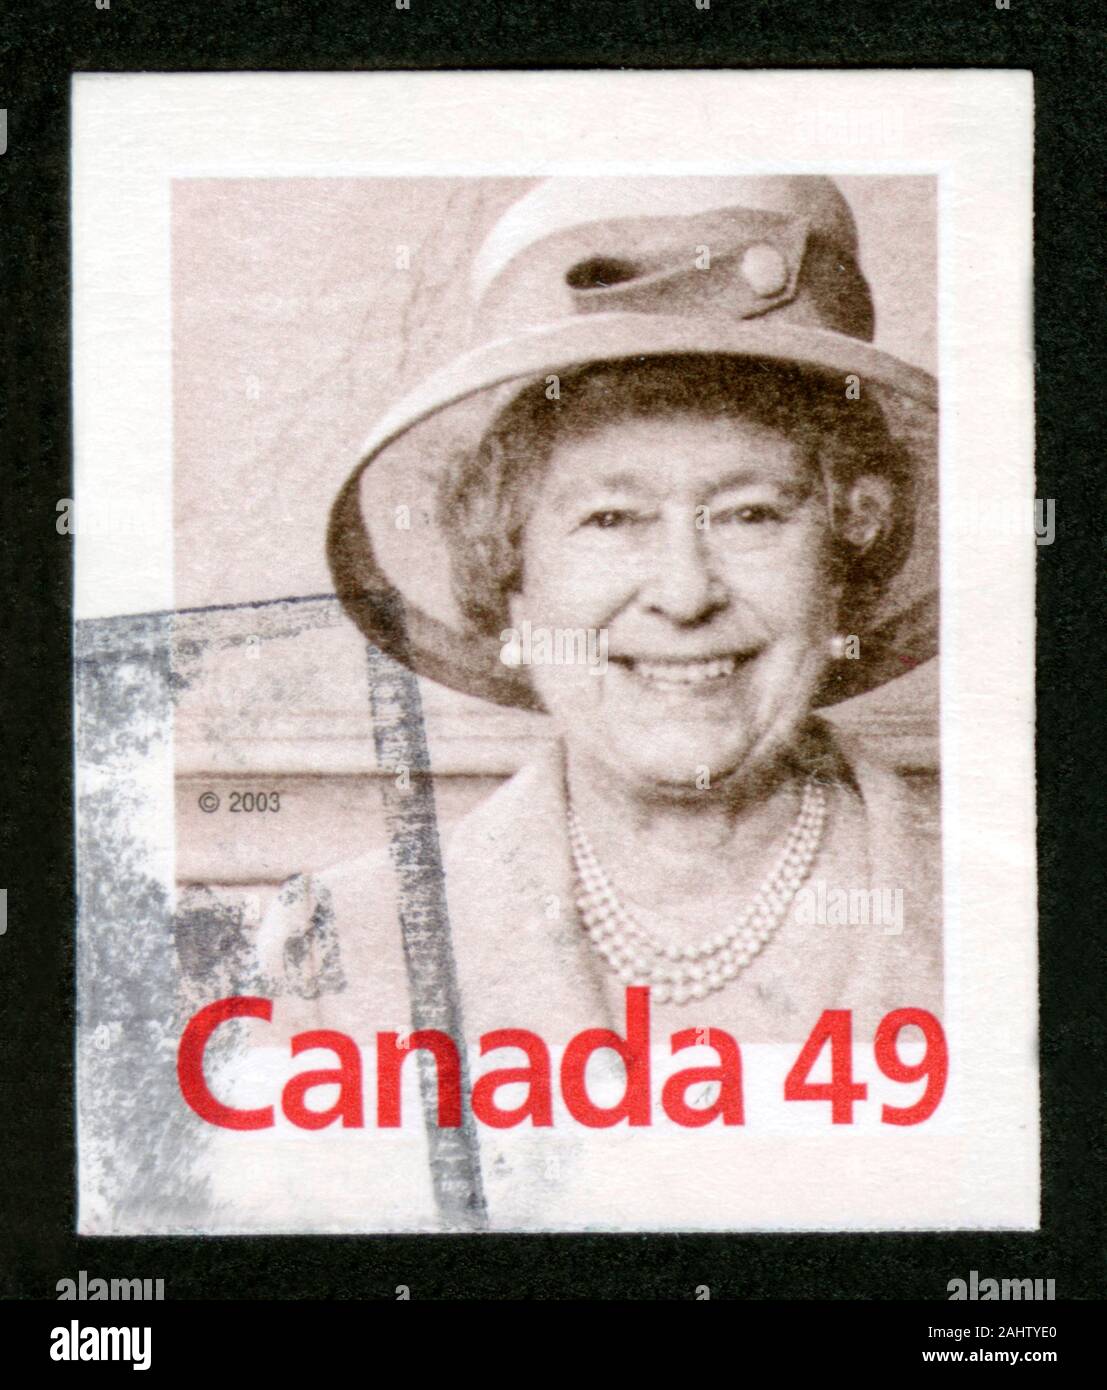 ~~~ ORGINAL~~~ POSTKARTE ~~~ aus Kanada Königin Elizabeth II von Großbritannien 